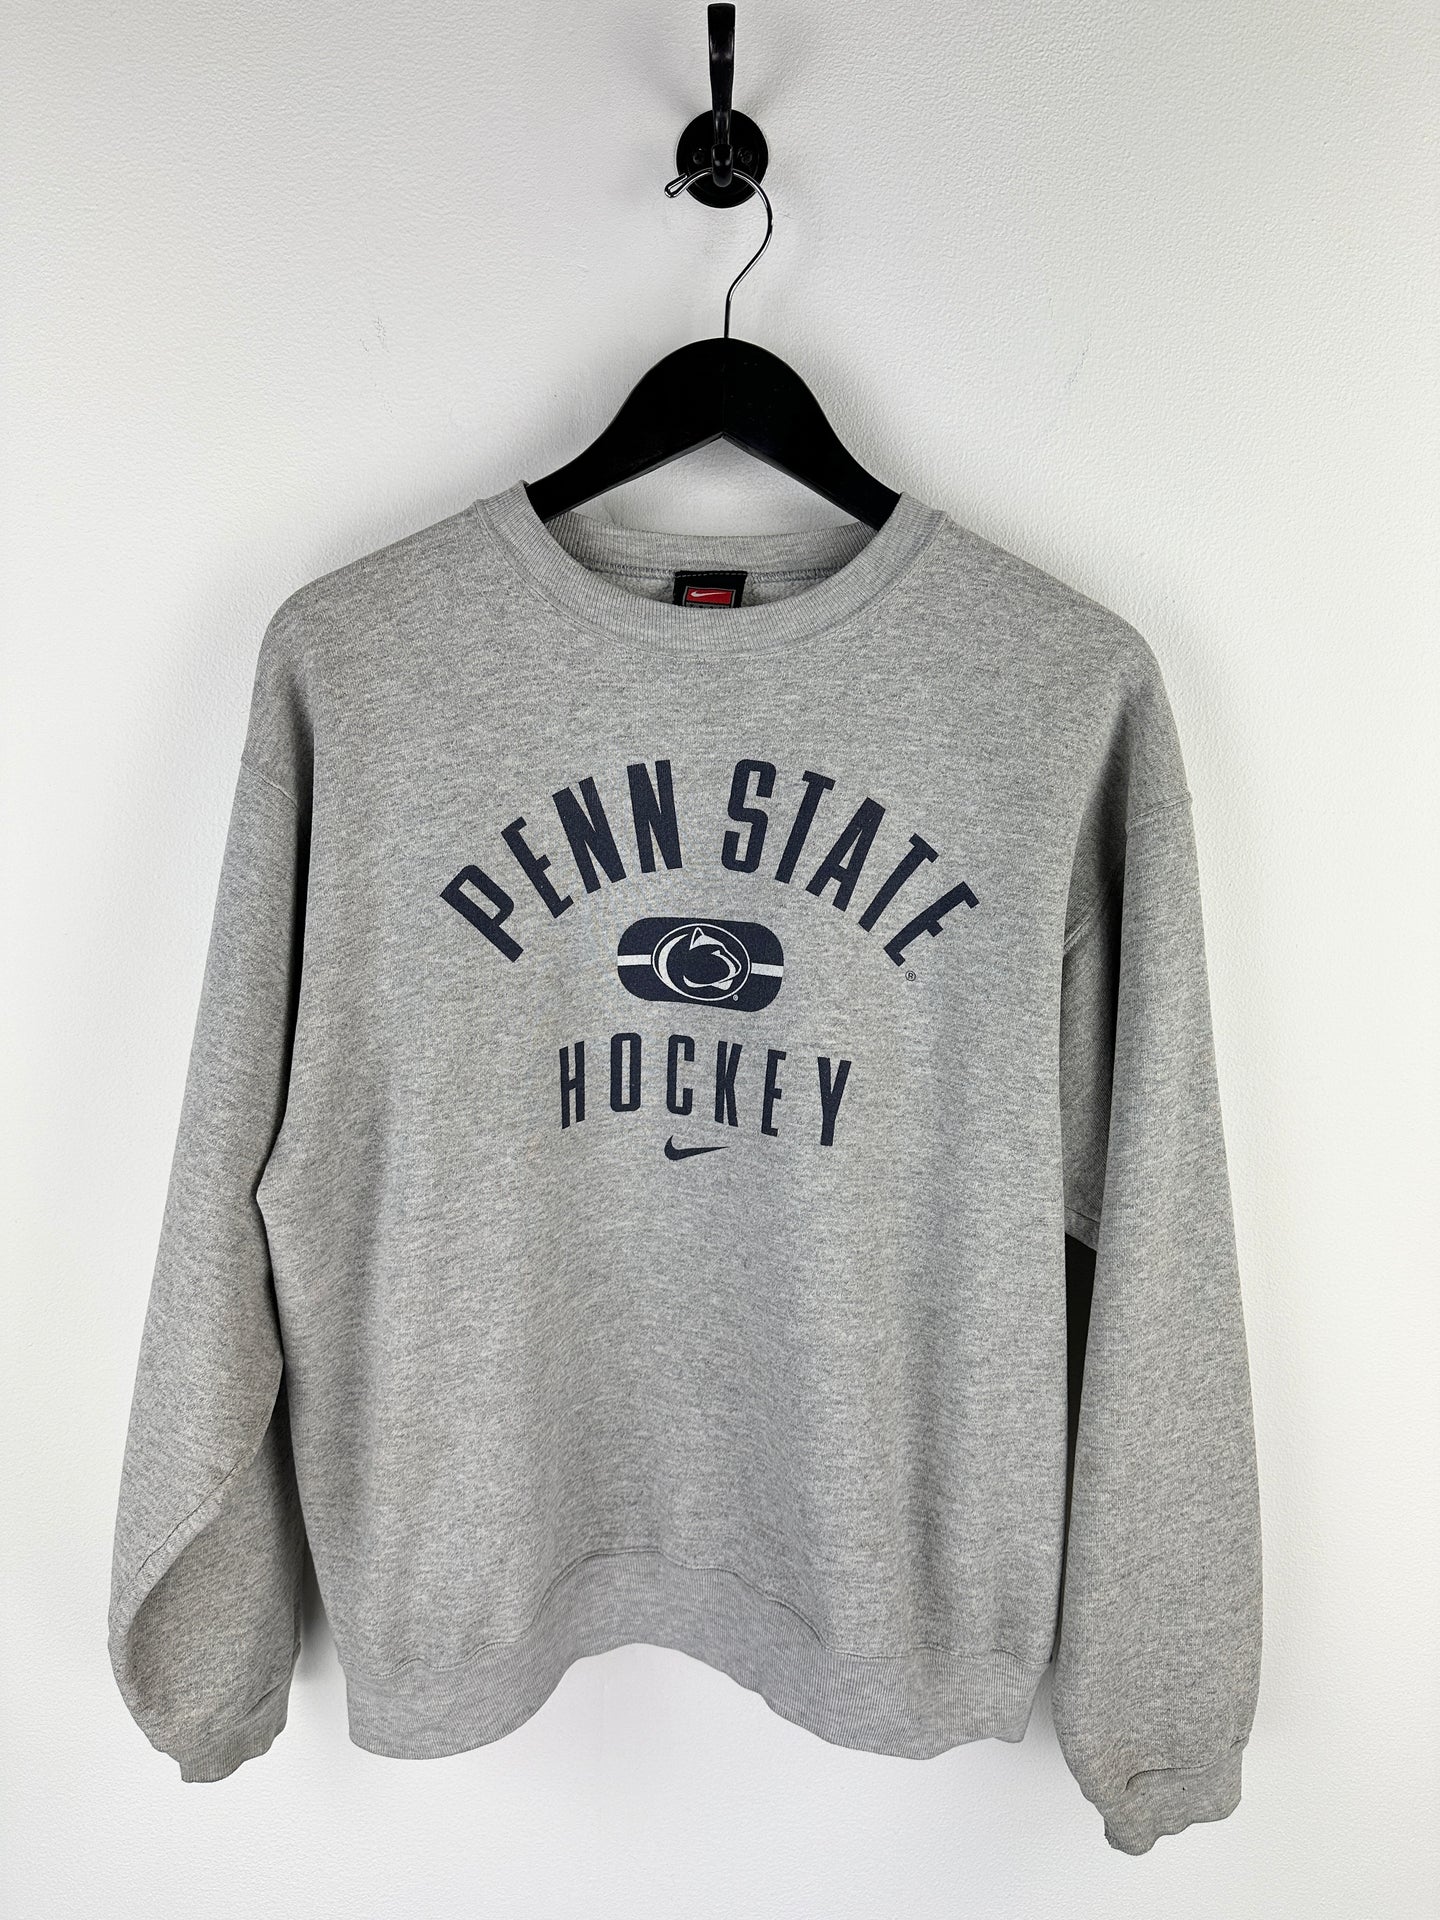 Vintage Penn State Hockey Sweatshirt